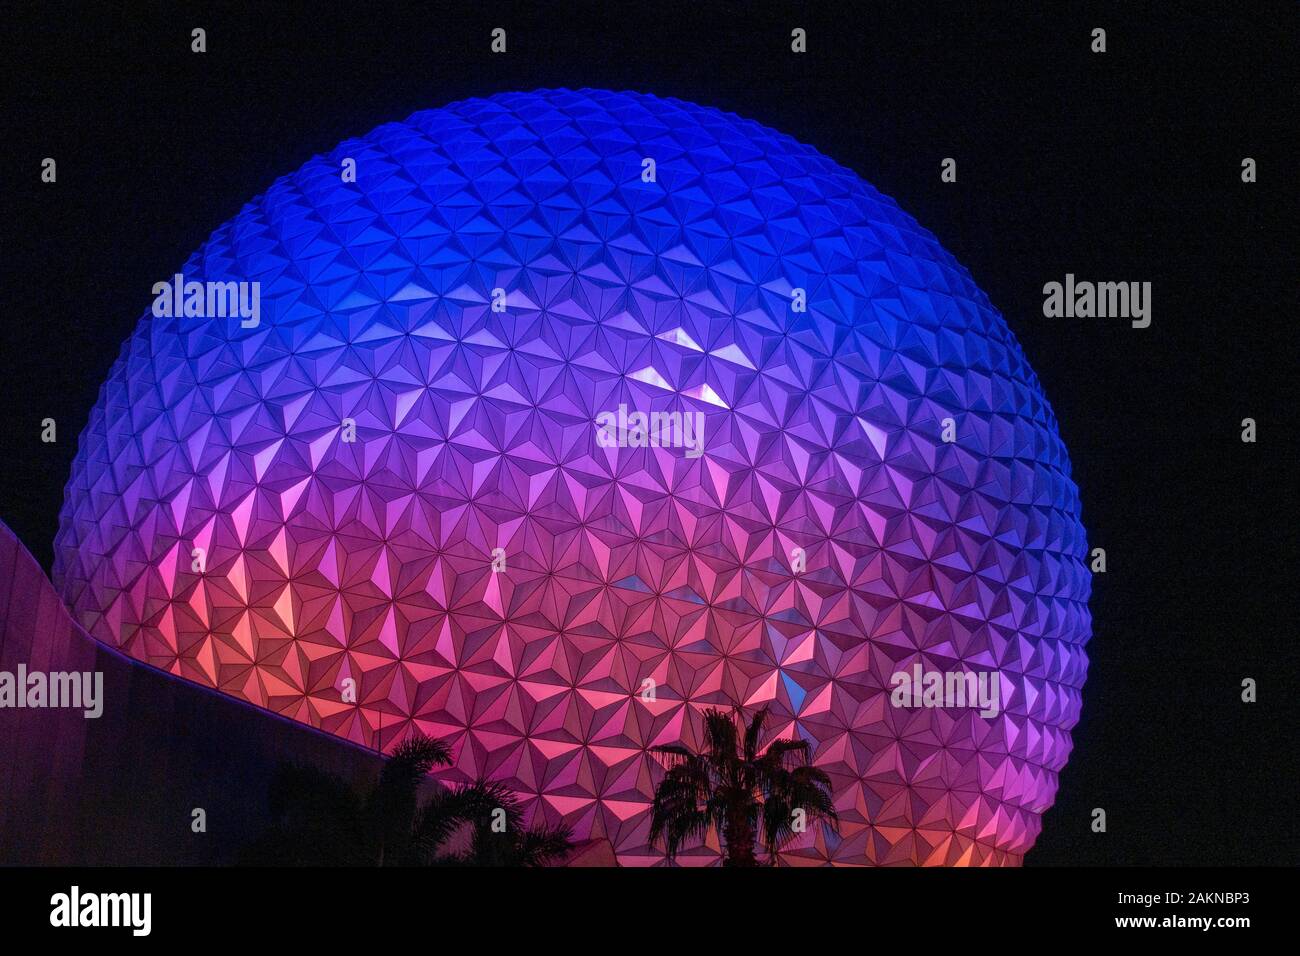 Außerhalb der "Raumschiff Erde" Fahrt in Epcot in Disney World, Orlando, Florida, USA. Stockfoto